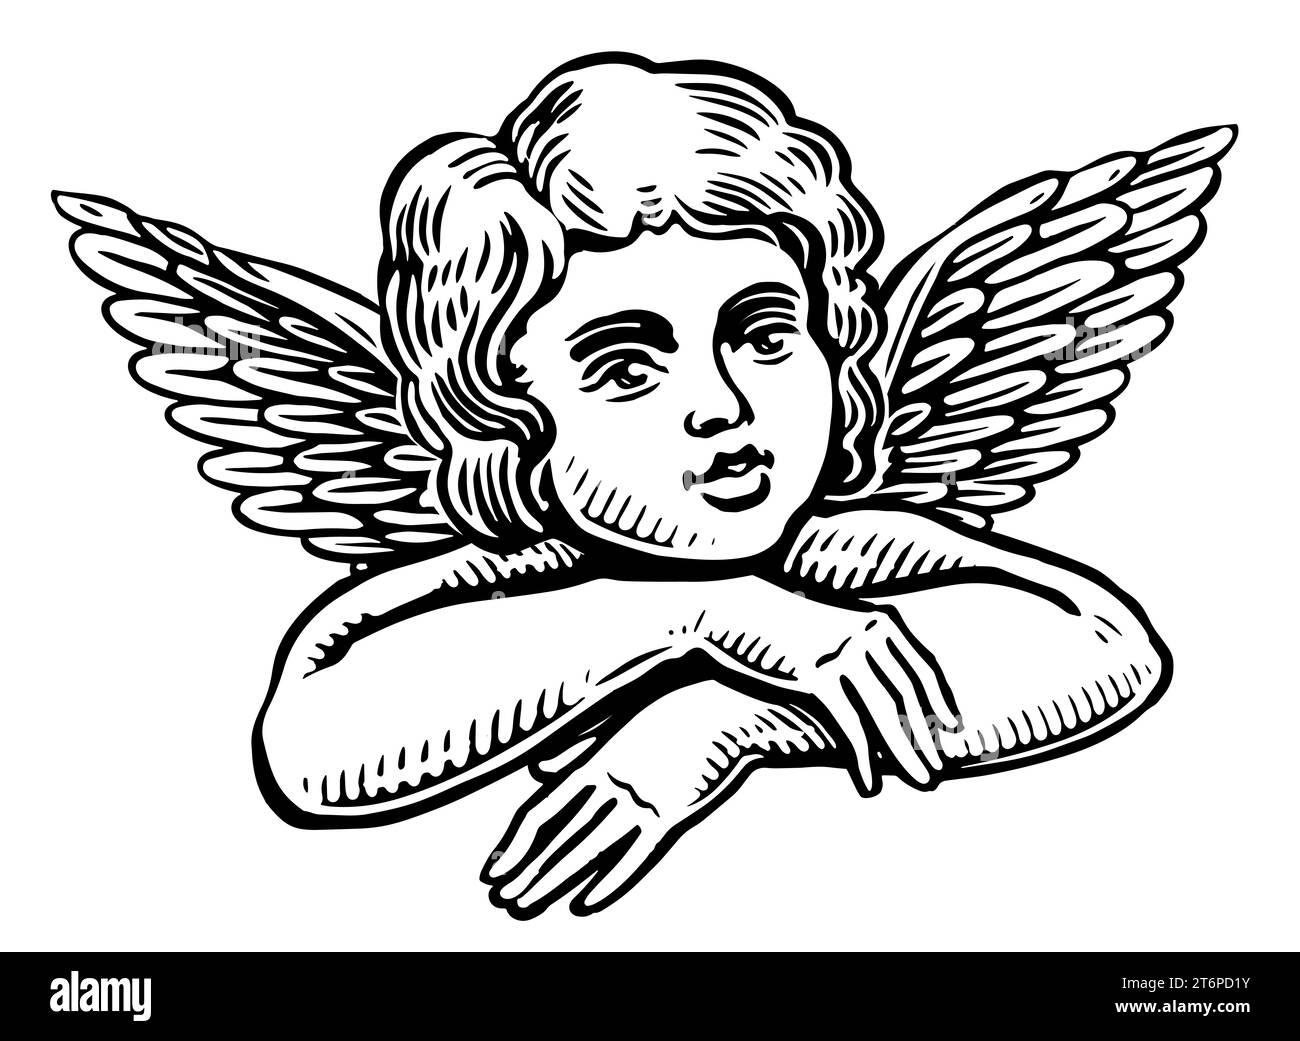 Mignon bébé ange avec des ailes. Illustration de style gravure de dessin de Cherub dessiné à la main Banque D'Images